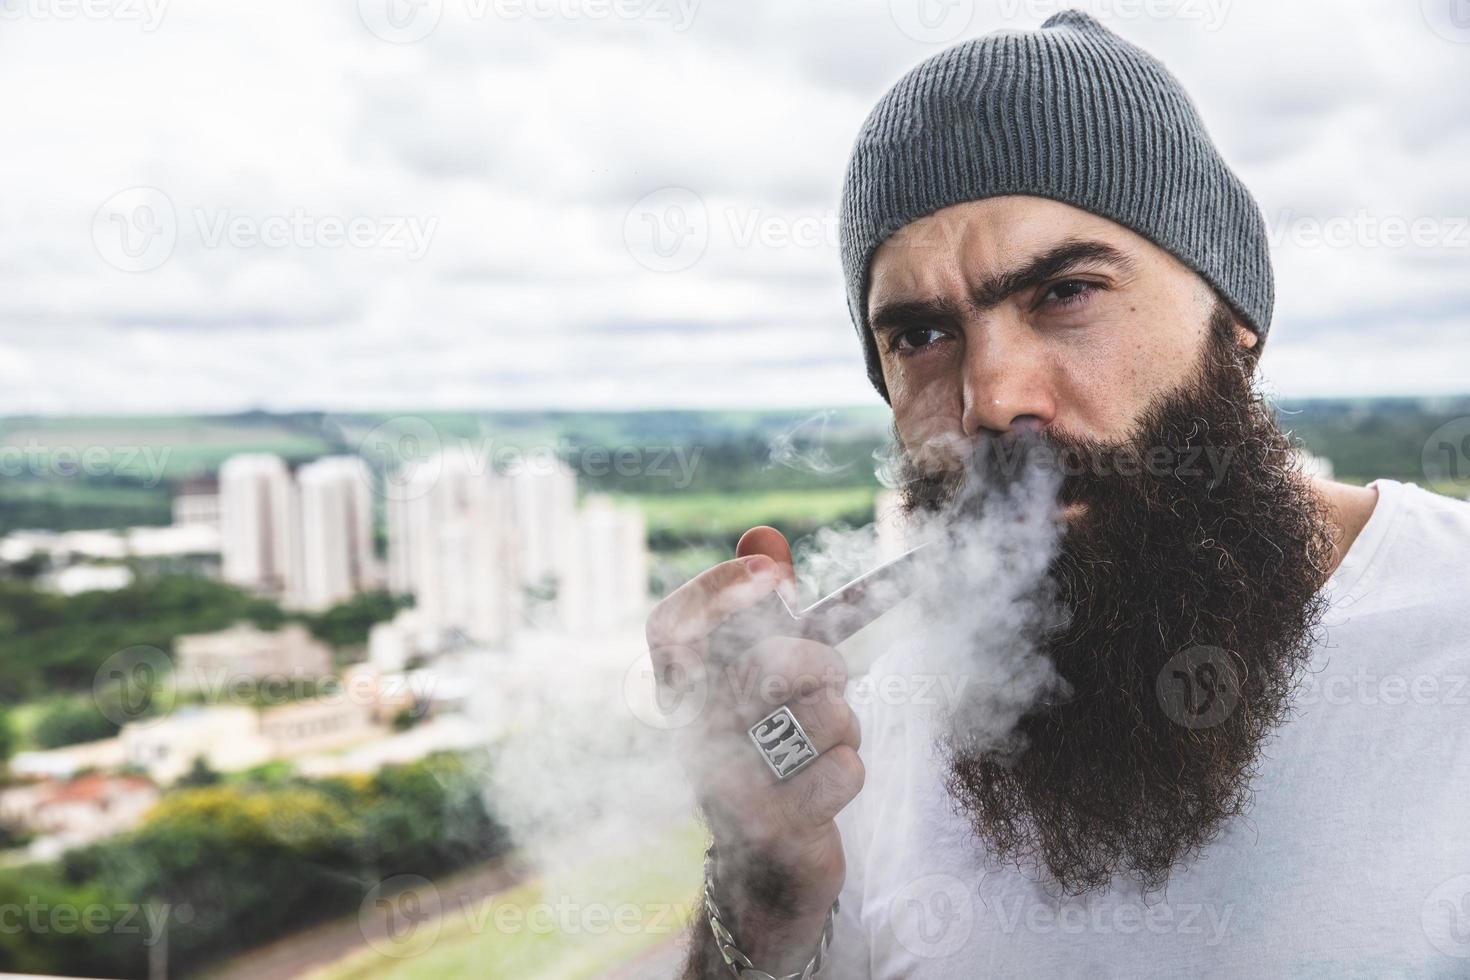 snygg skäggig man röker pipa tittar på horisonten från toppen av en hög byggnad. foto